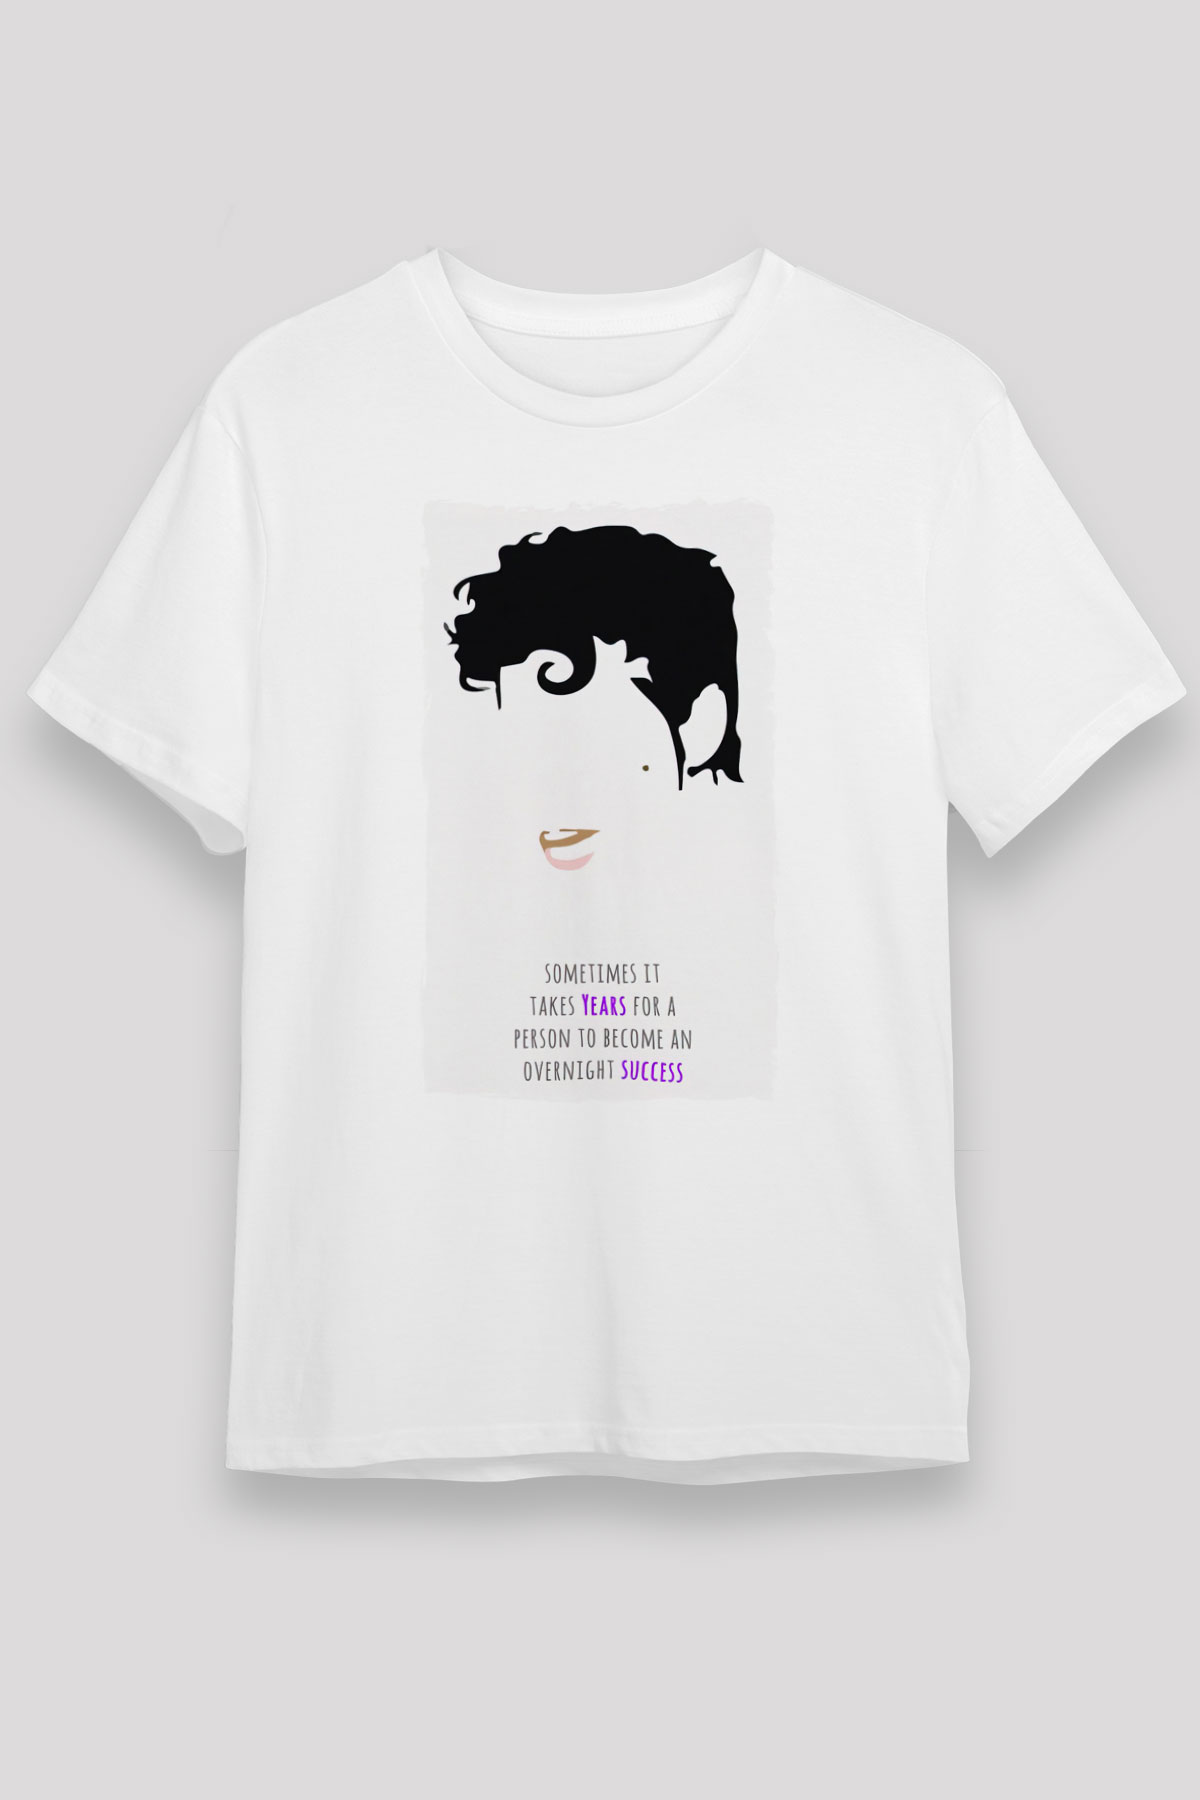 Prince T shirt,Music Band,Unisex Tshirt 03